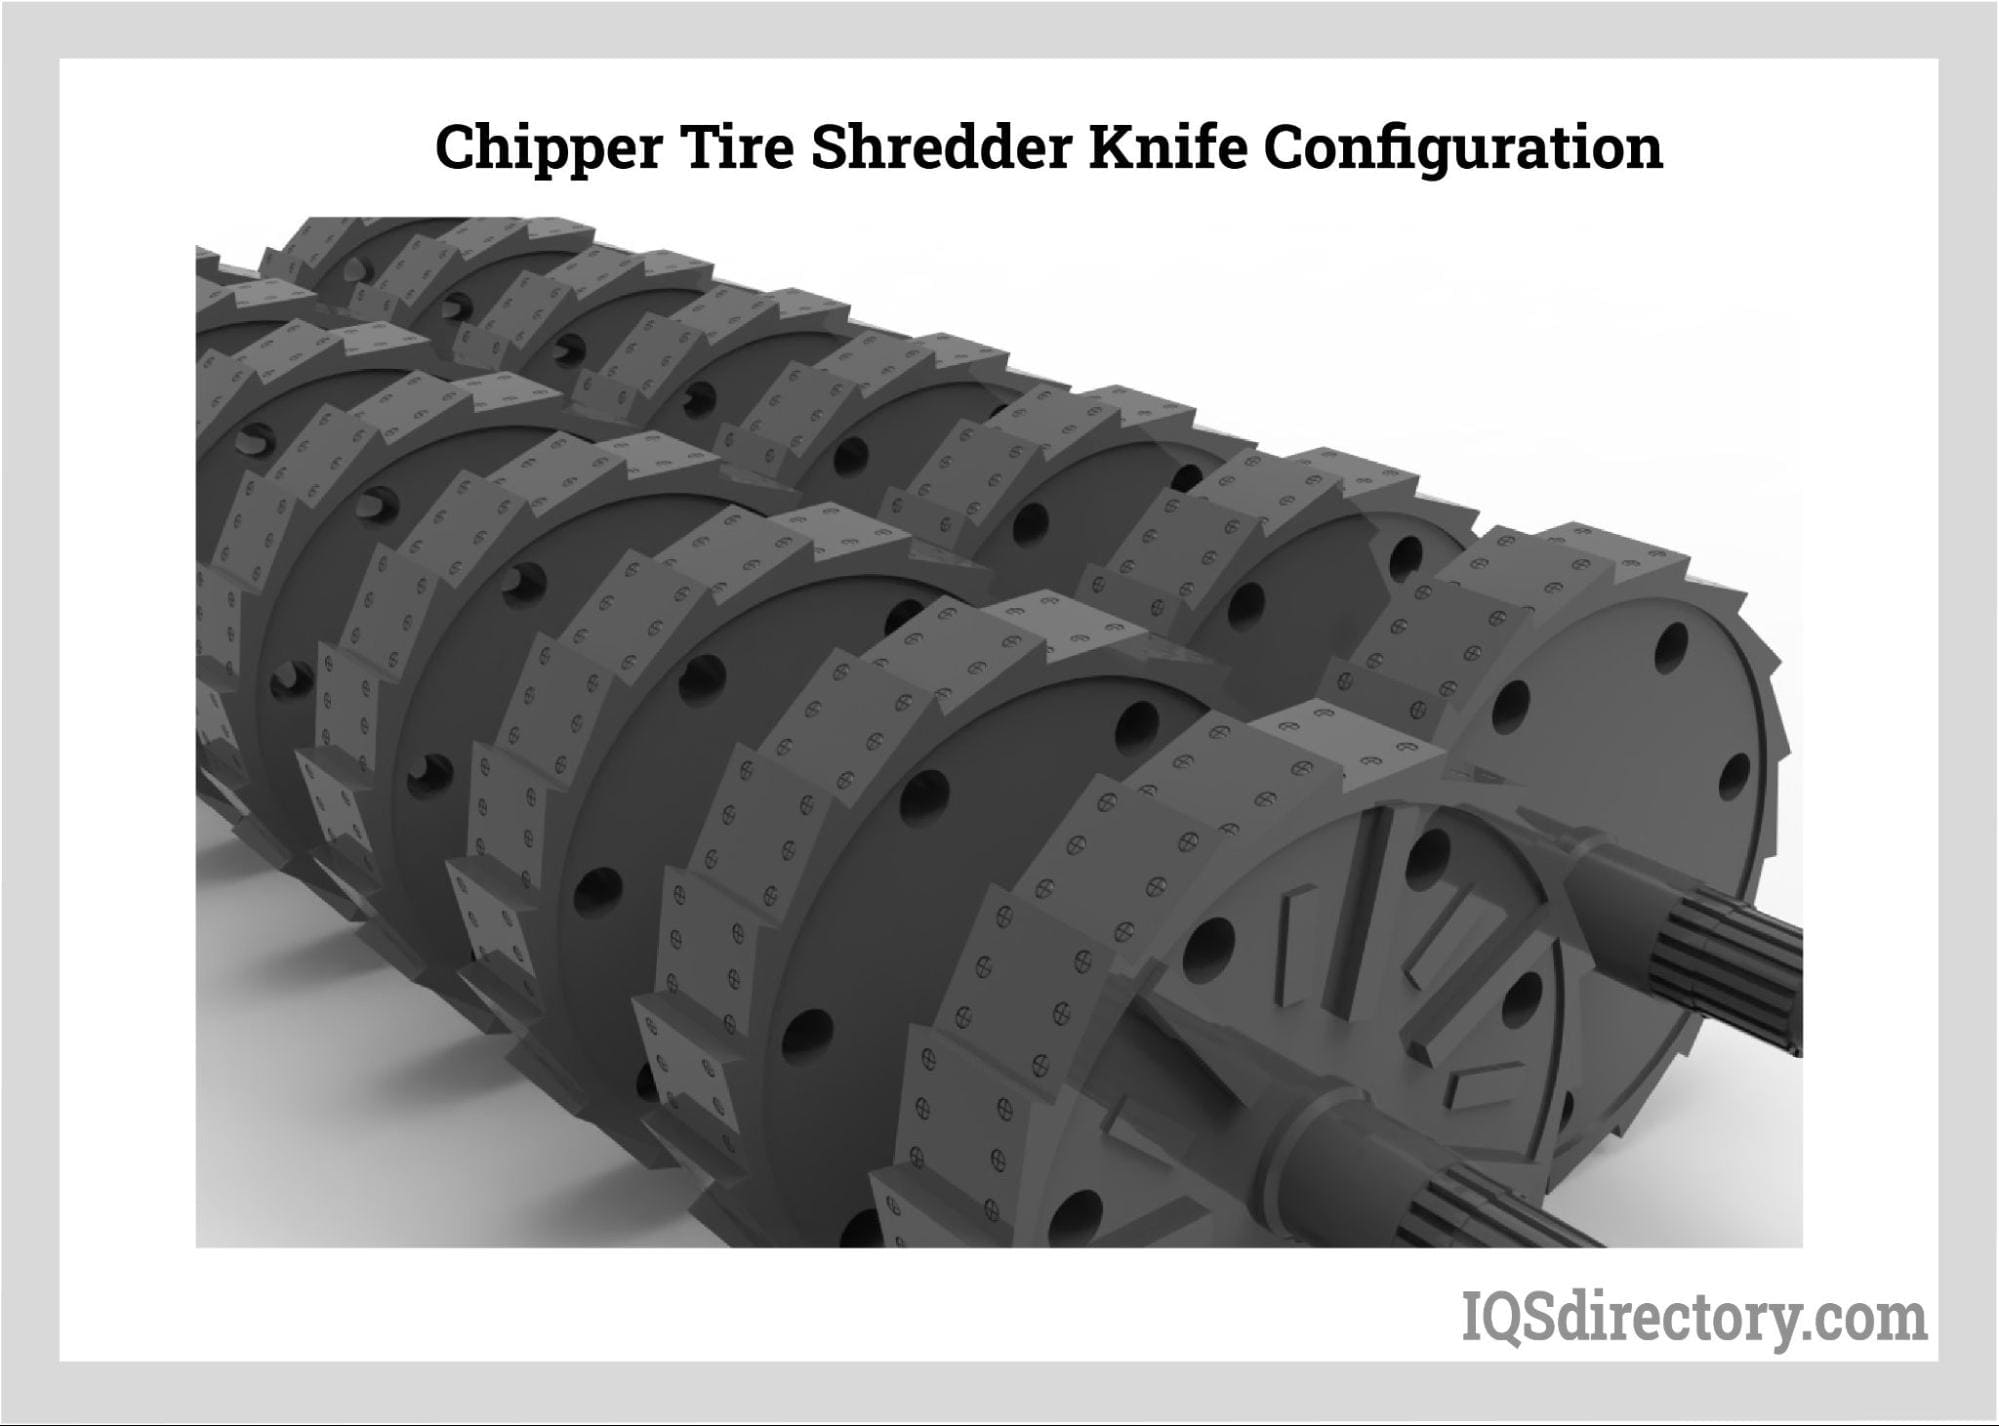 Chipper Tire Shredder Knife Configuration